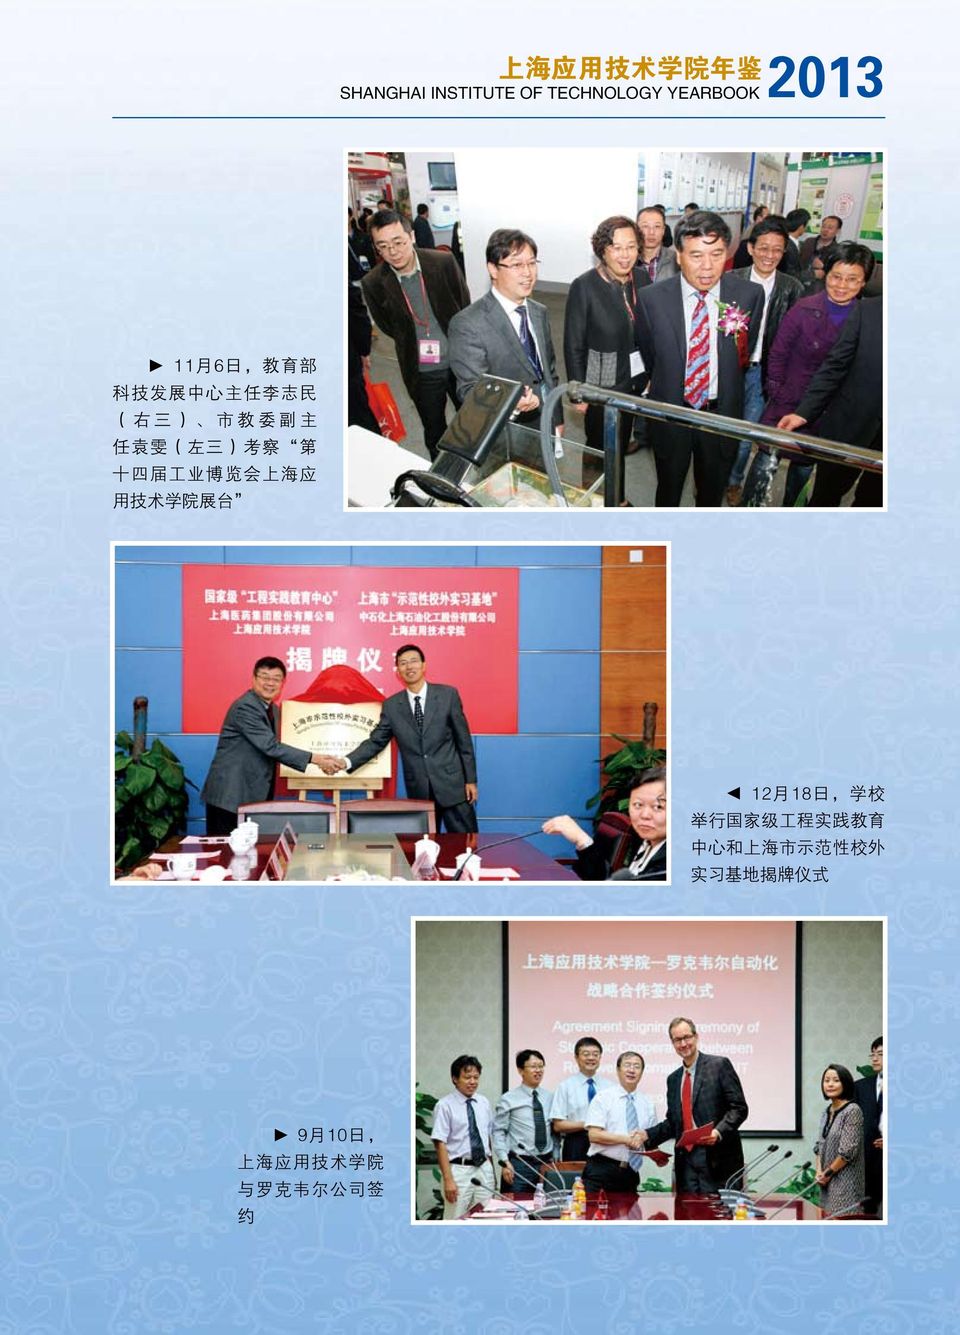 工 业 博 览 会 上 海 应 用 技 术 学 院 展 台 12 月 18 日, 学 校 举 行 国 家 级 工 程 实 践 教 育 中 心 和 上